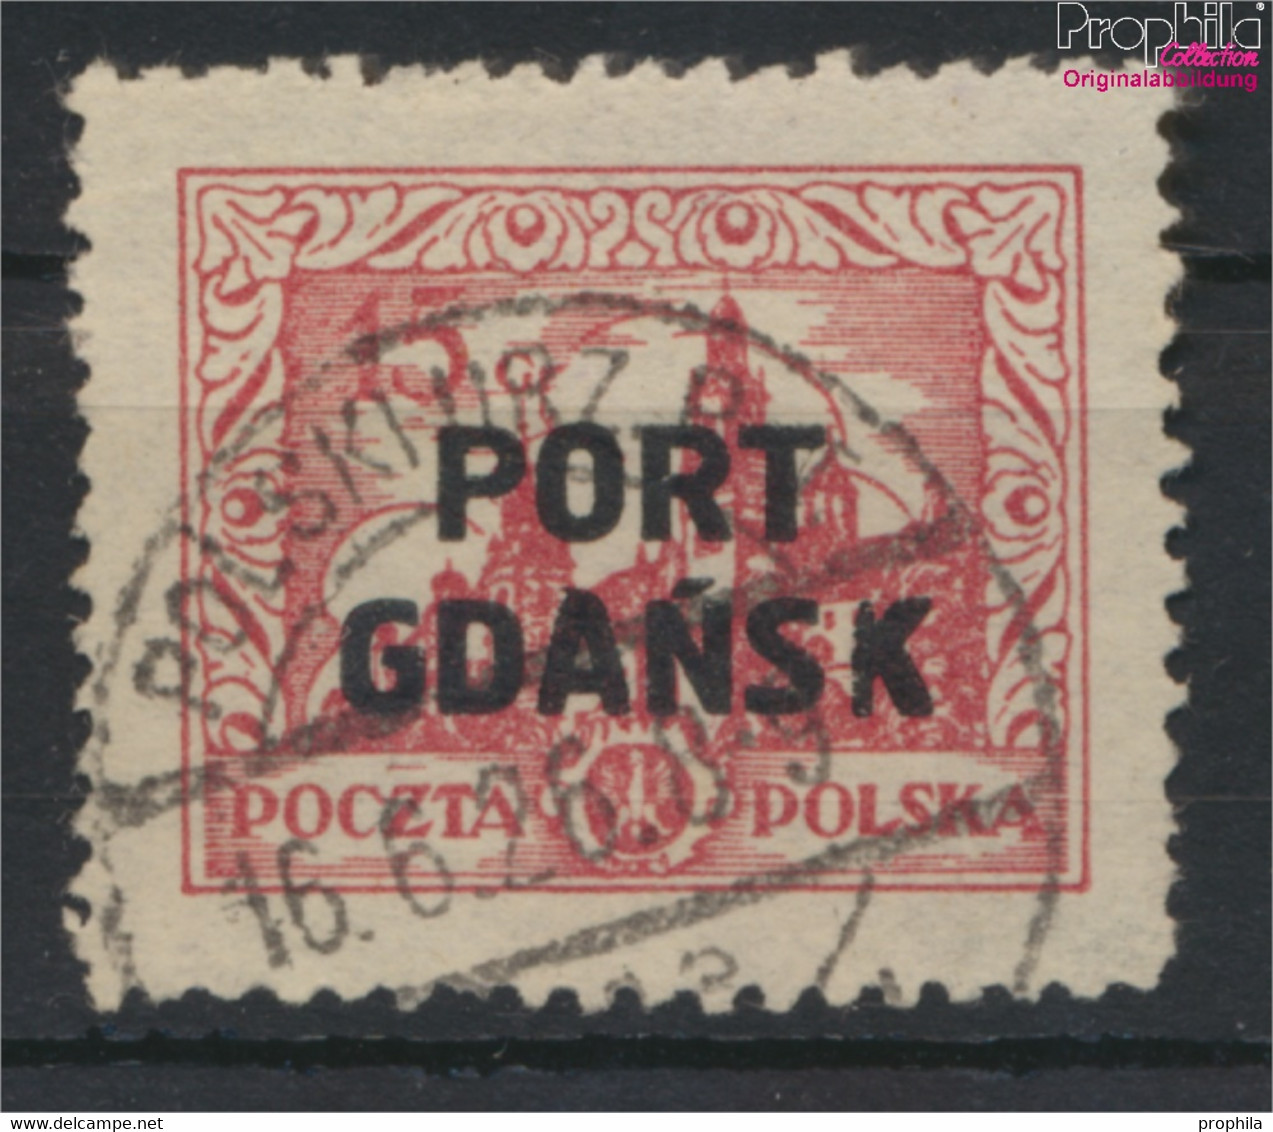 Polnische Post Danzig 14 Gestempelt 1926 Aufdruckausgabe (9687990 - Port Gdansk